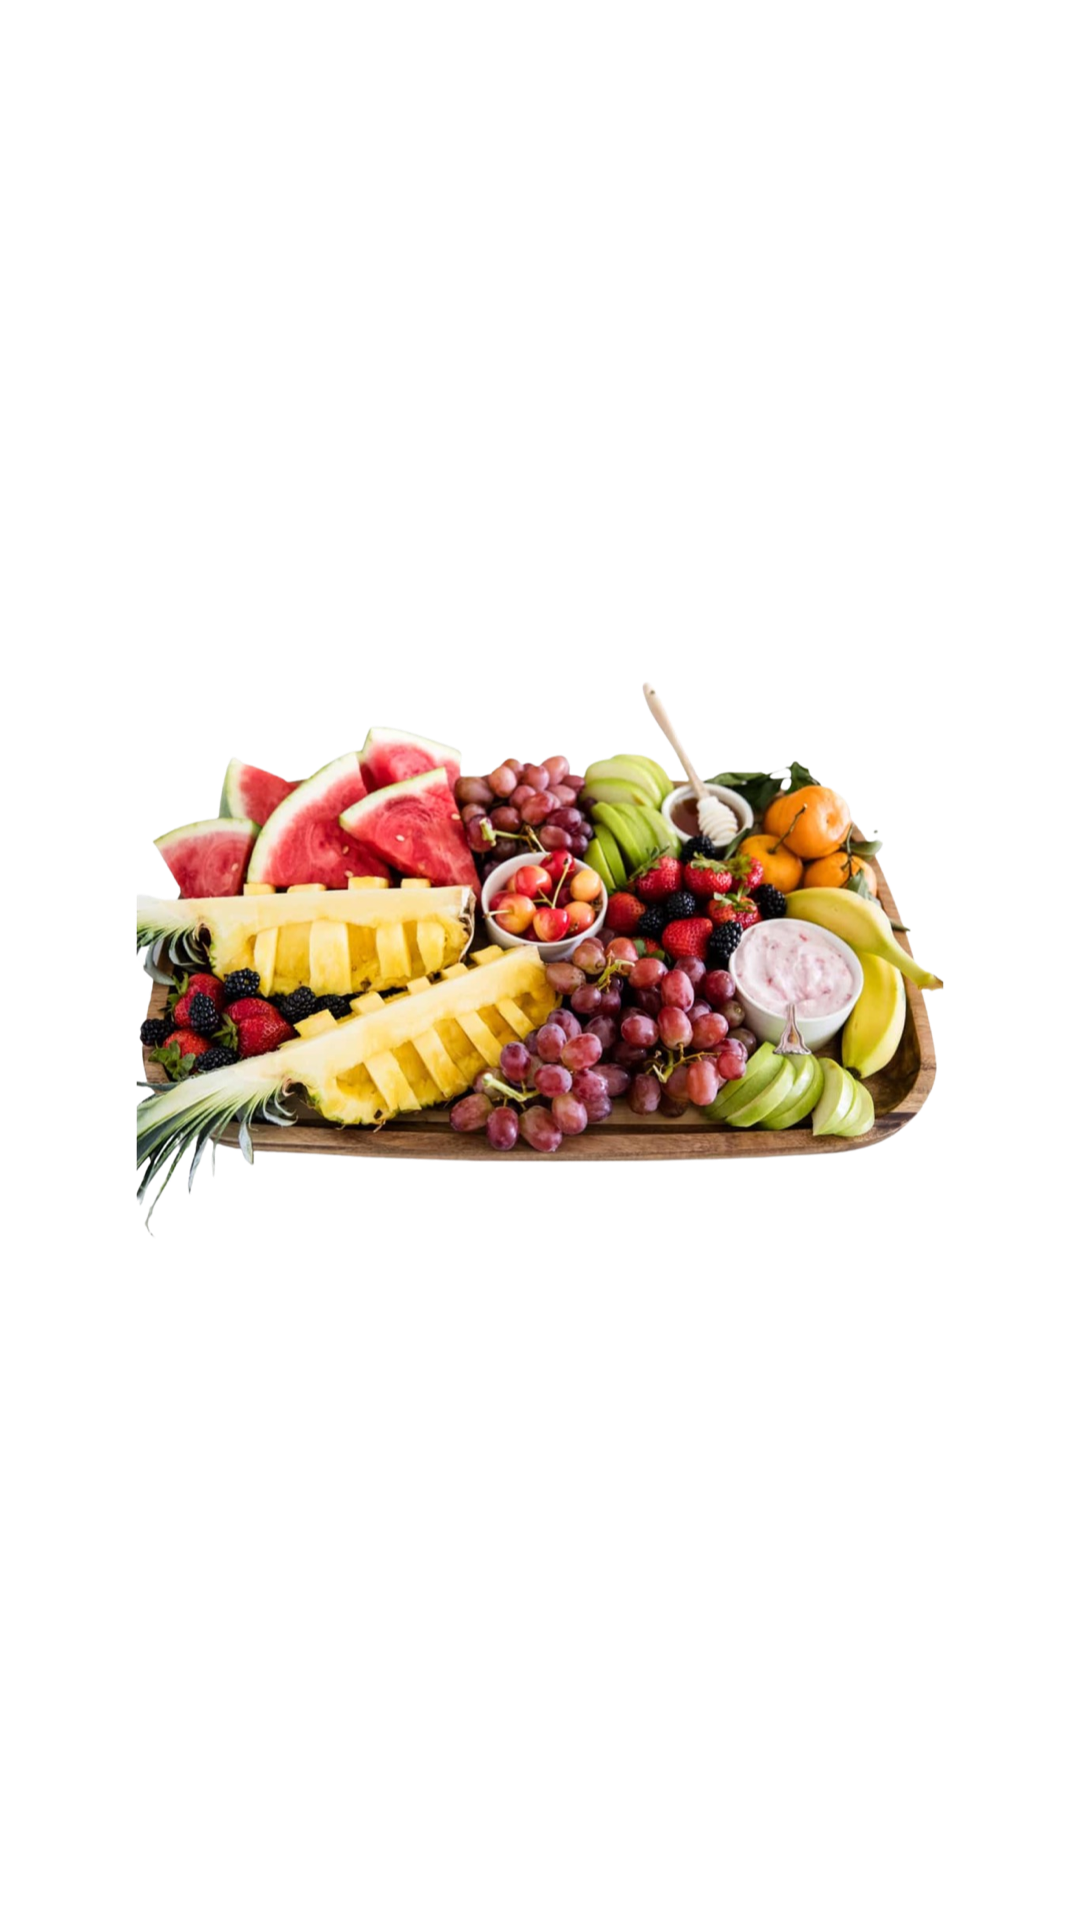 buffet food fruit salad